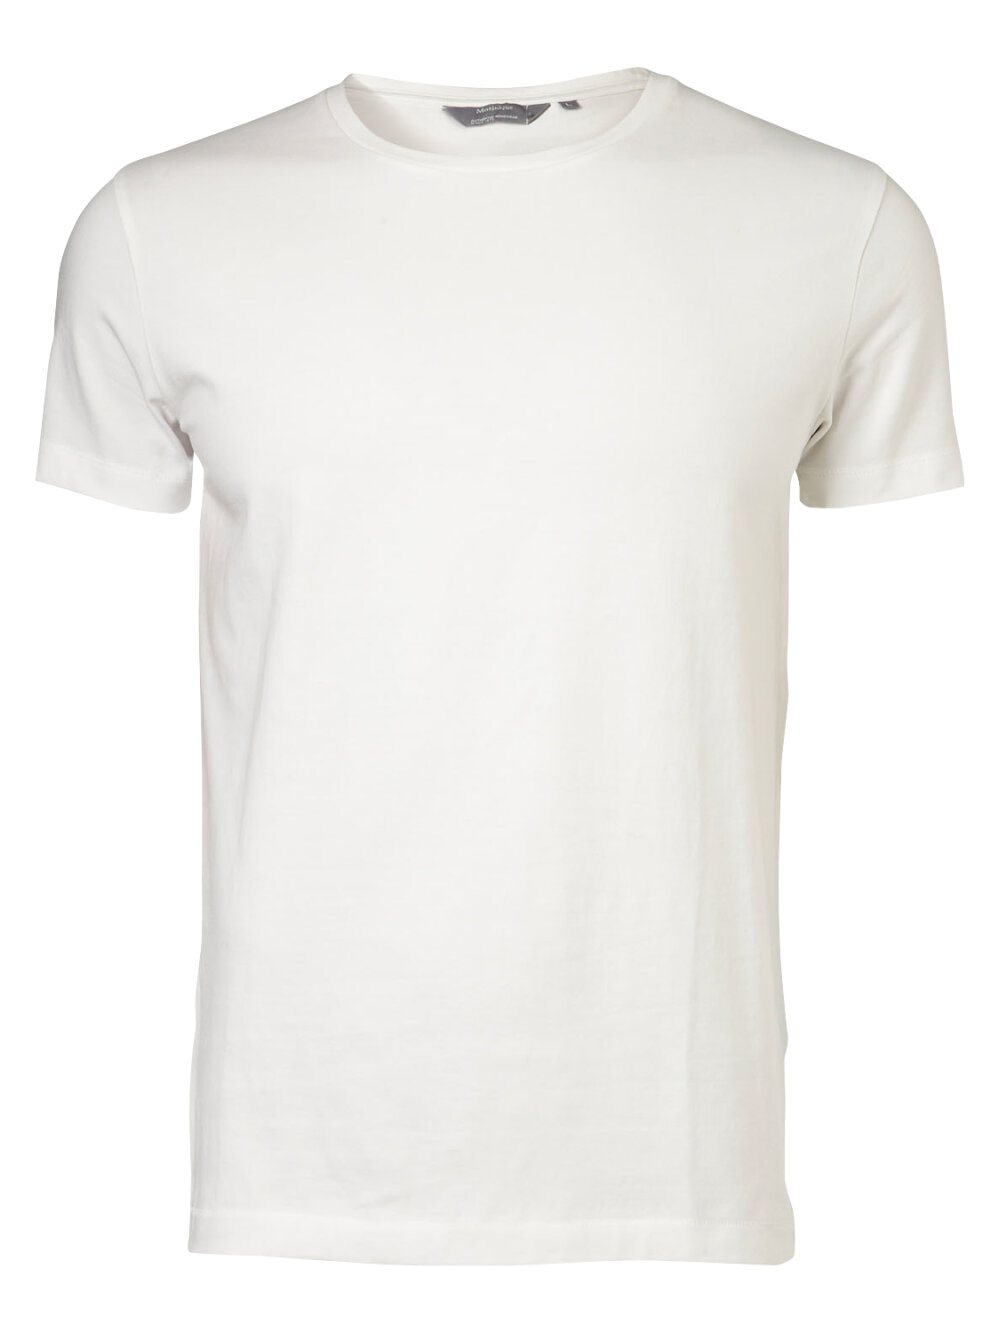 Matinique - Jermalink T-shirt